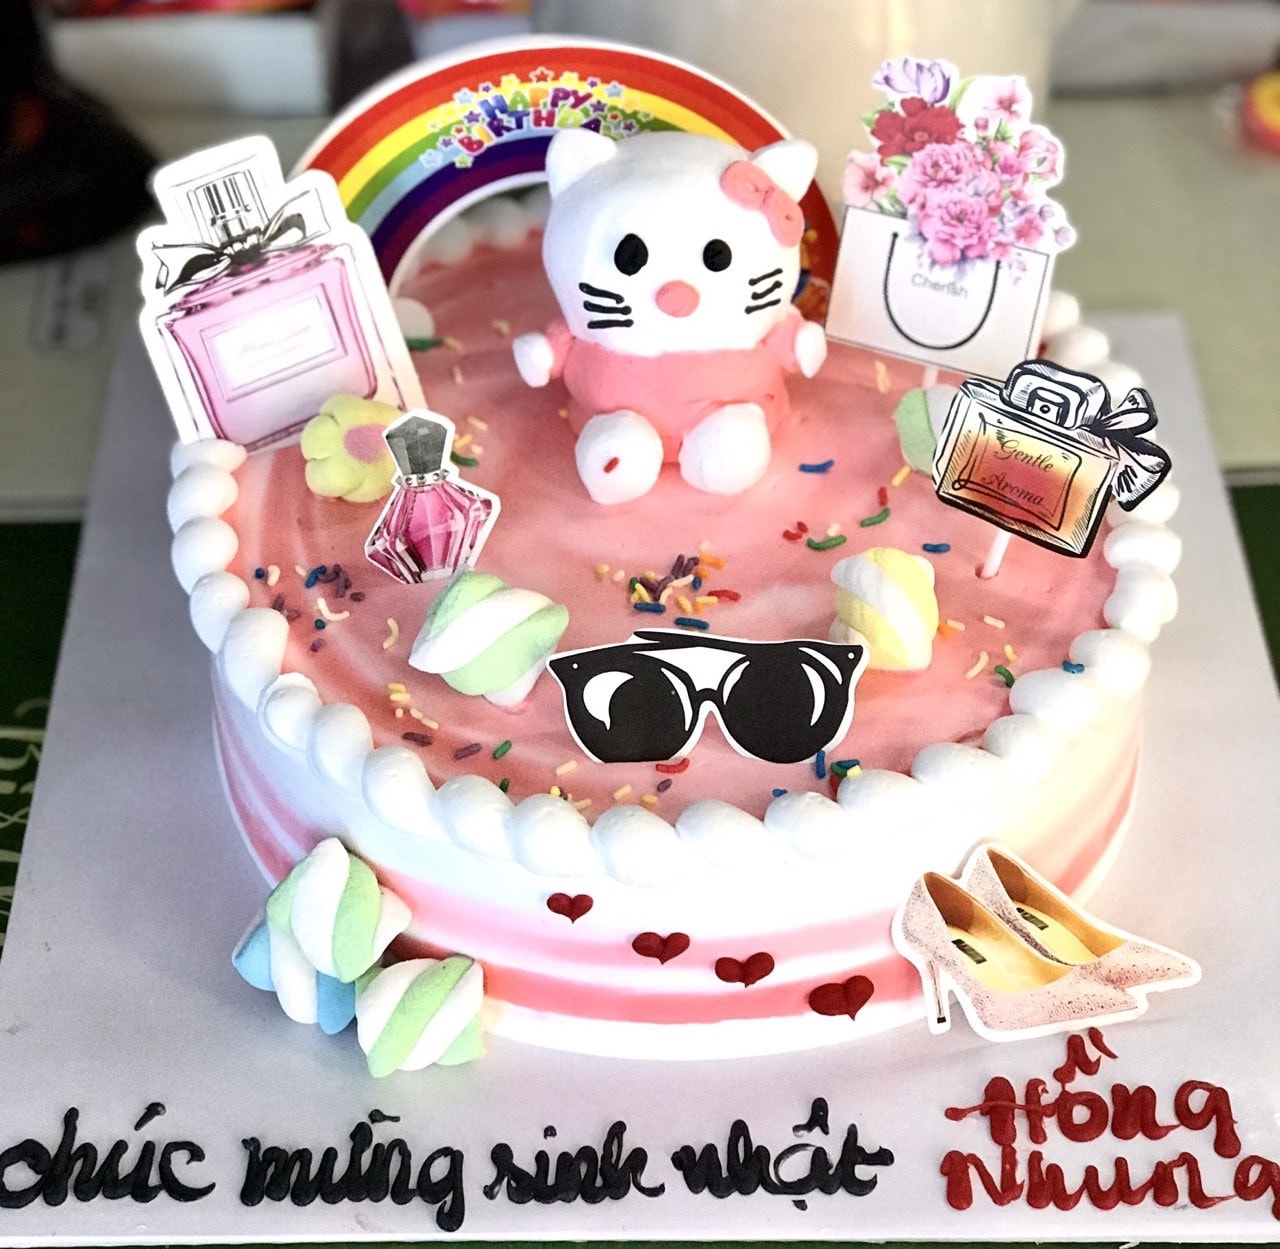 Bạn đang tìm kiếm một món quà sinh nhật đẹp và độc đáo dành cho bé gái của mình? Hãy xem qua chiếc bánh kem bé gái đẹp trong hình ảnh, với thiết kế độc đáo và trang trí tinh tế, chiếc bánh này sẽ làm cho ngày sinh nhật của bé thật tuyệt vời và đáng nhớ.